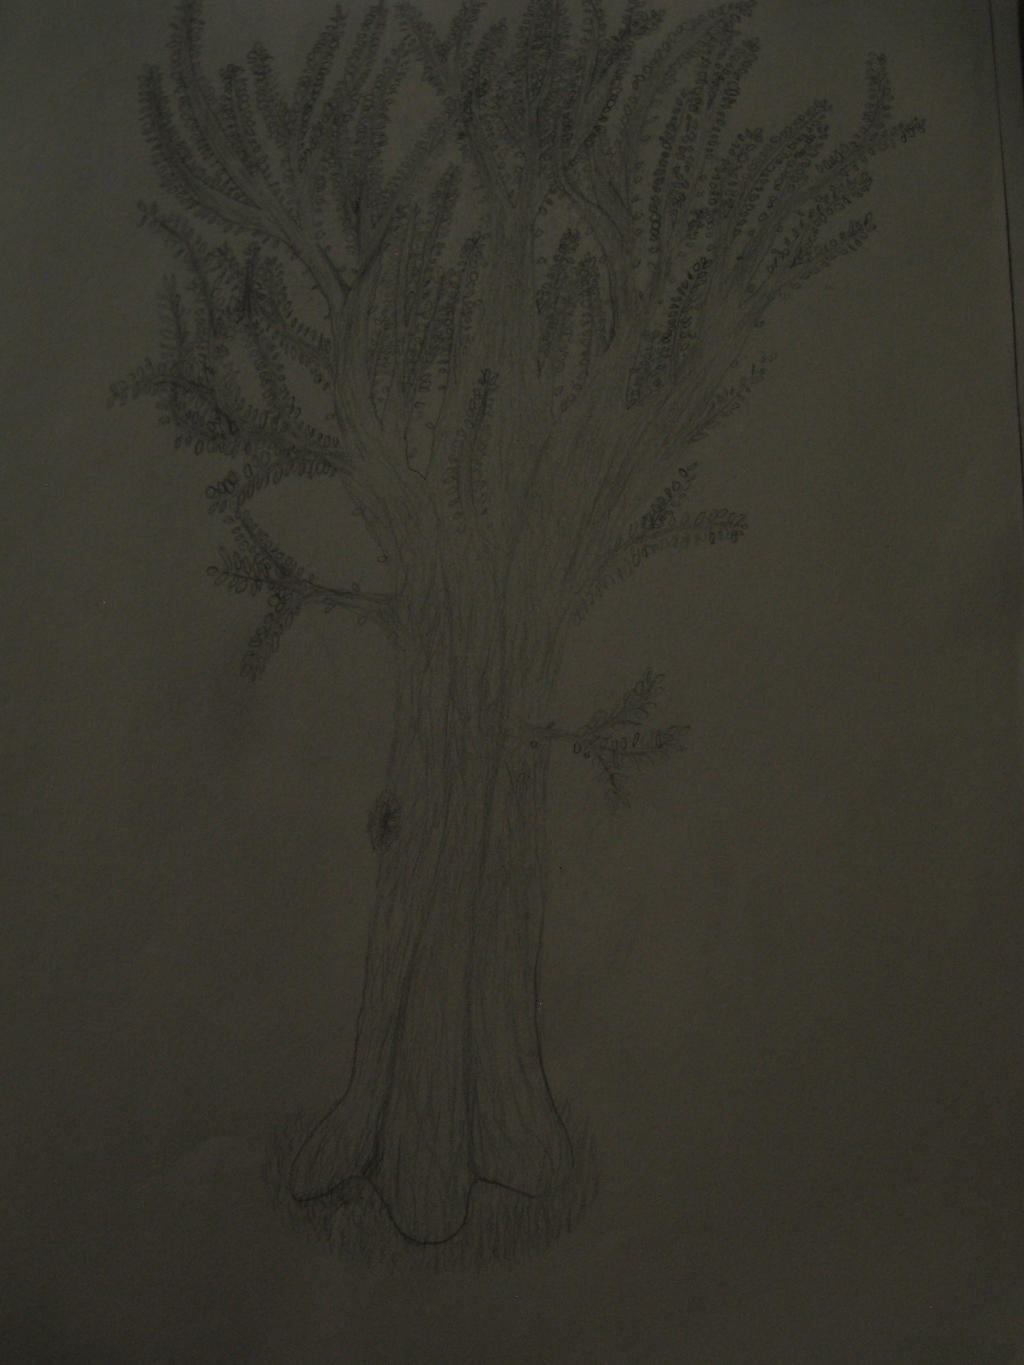 my_very_first_tree_drawing_ever_by_girghgh-d8vs7ku.jpg